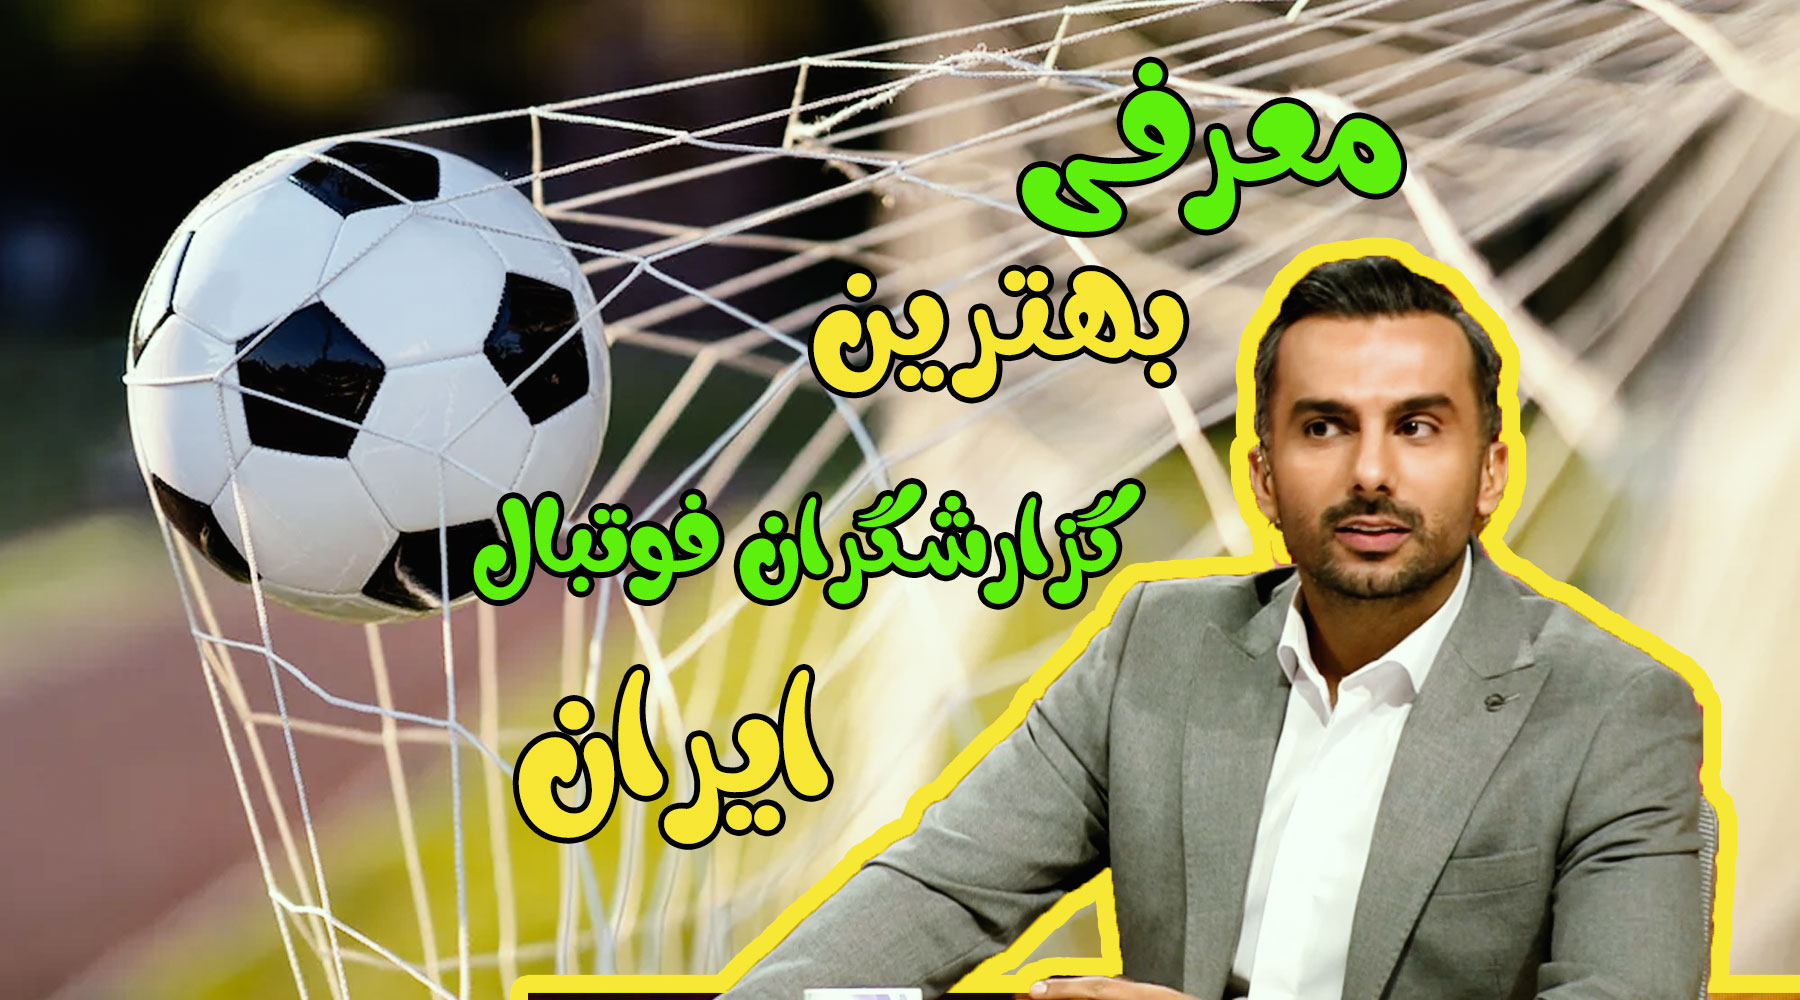 اسامی بهترین گزارشگران فوتبال ایران به ترتیب با عکس